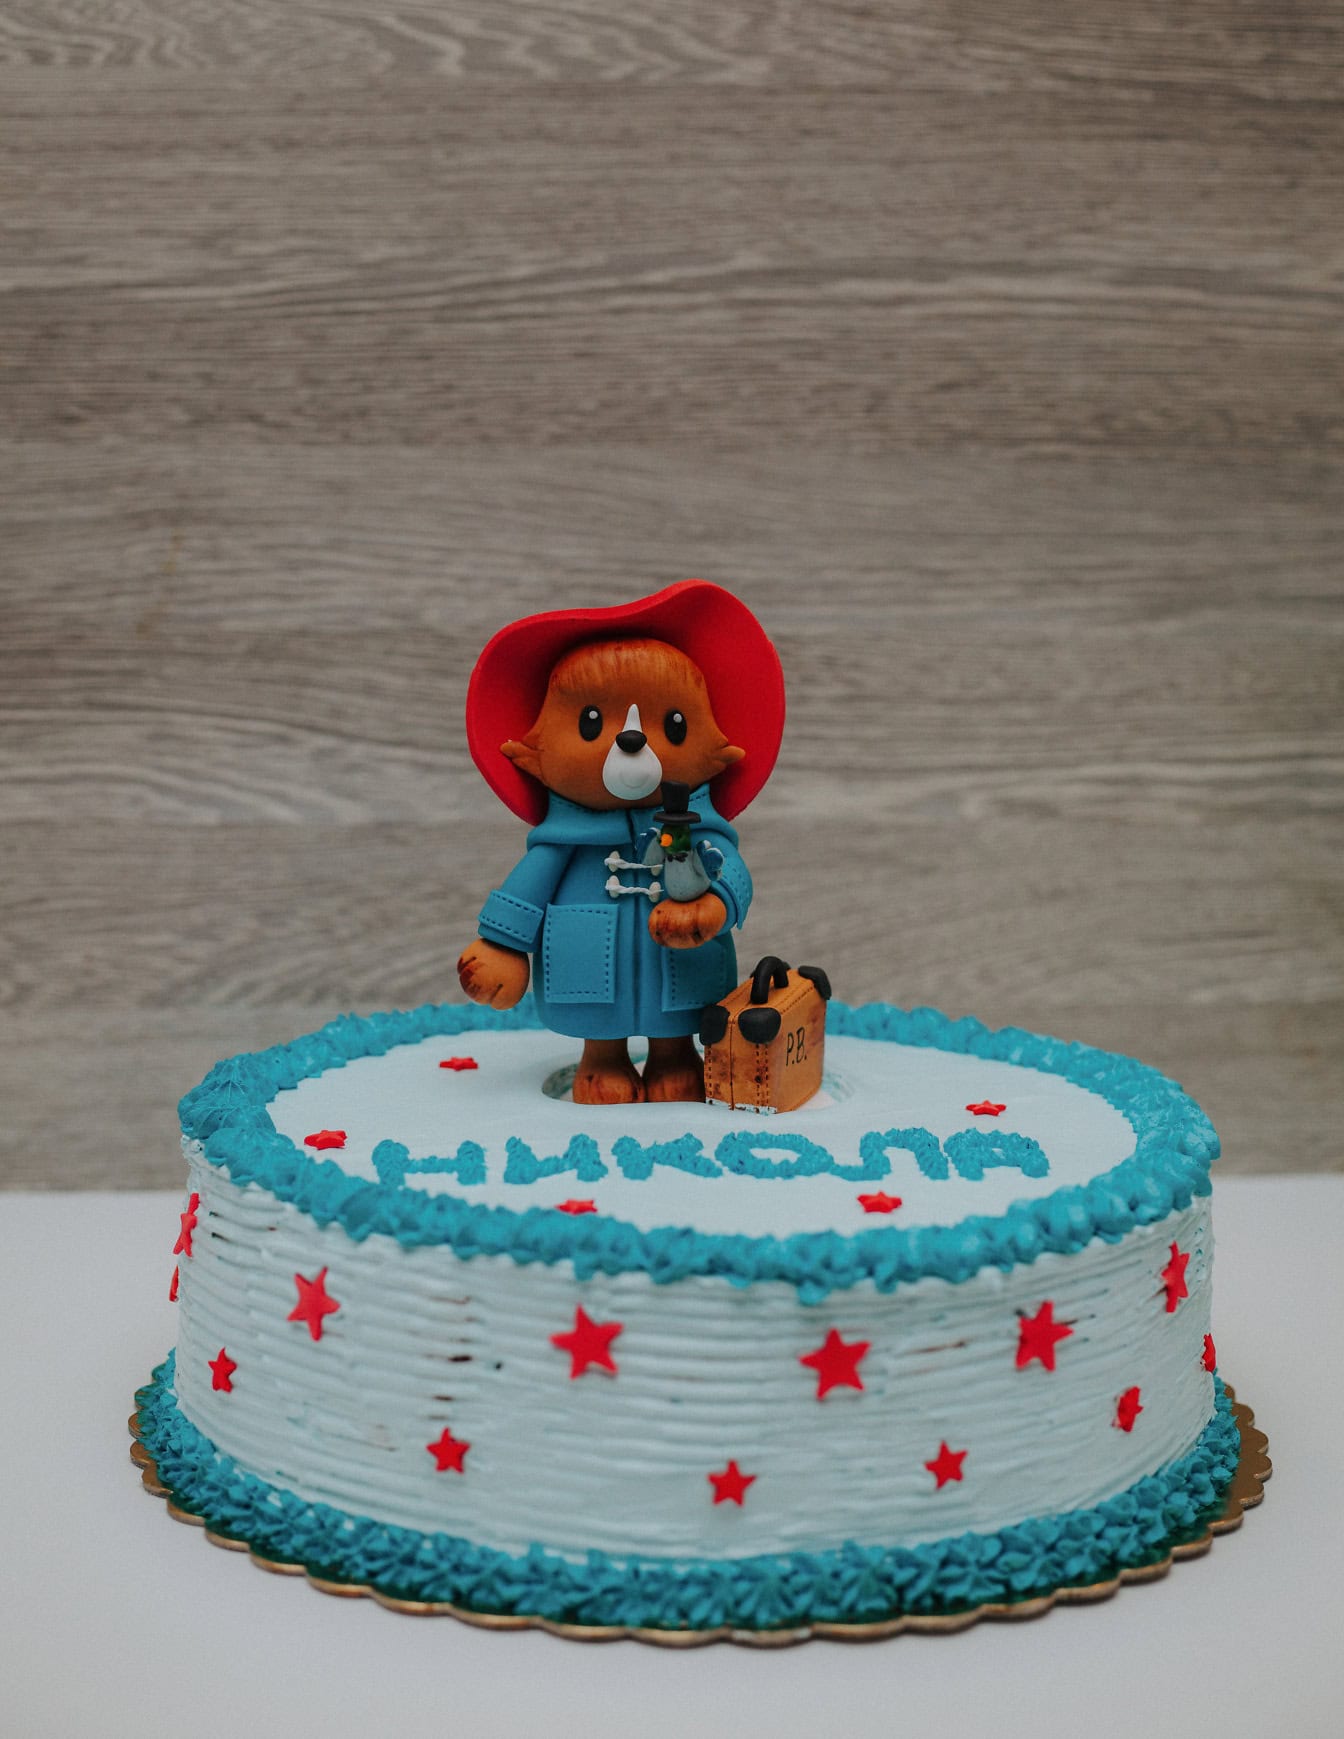 Bánh sinh nhật với trang trí theo hình gấu bông Paddington trên đầu